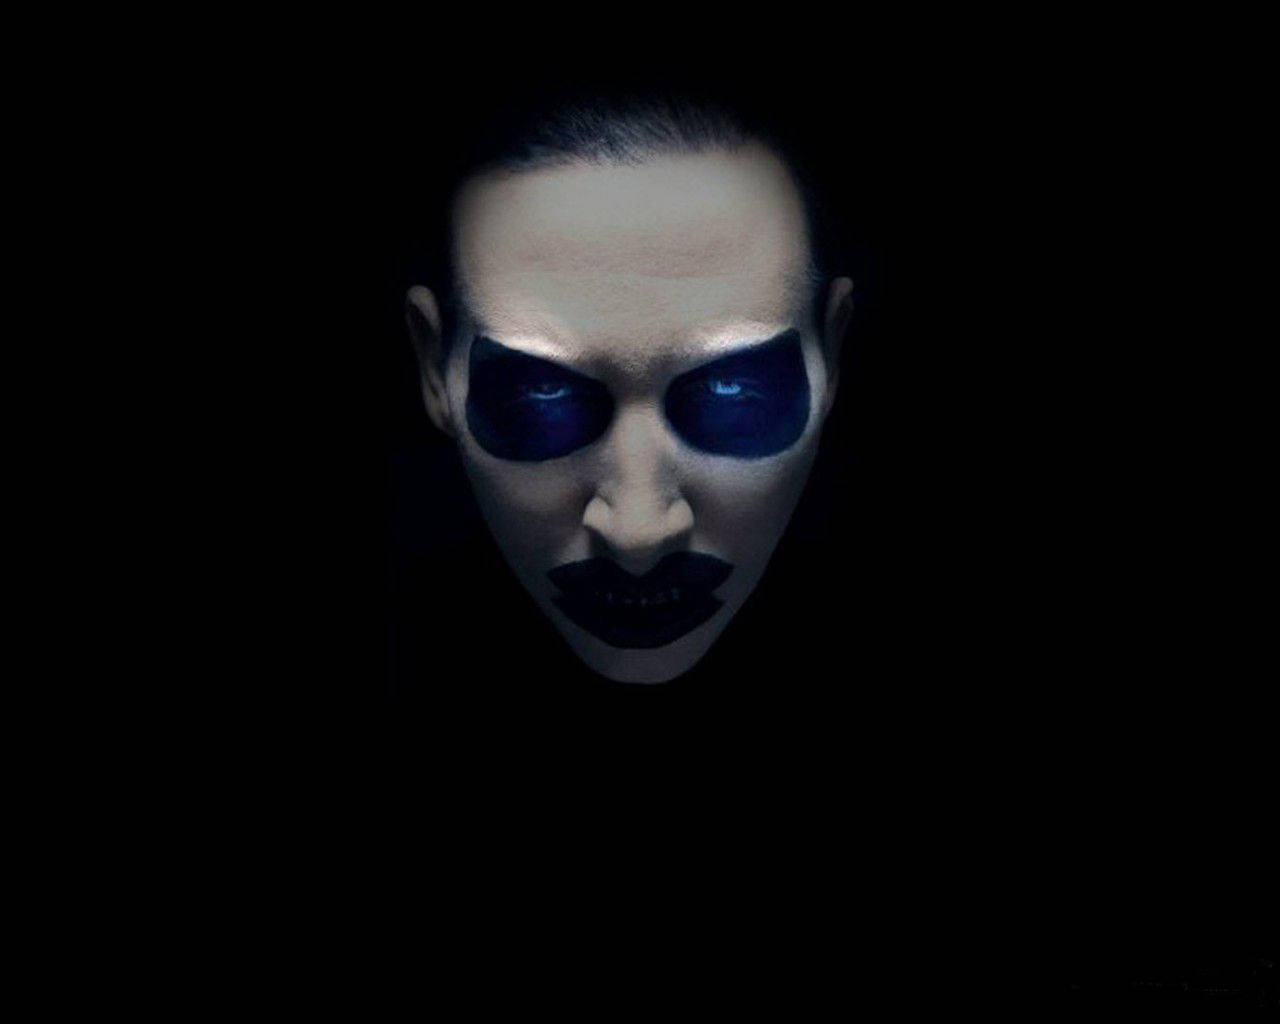 Den kontroversielle rocksanger Marilyn Manson pryder denne baggrund. Wallpaper